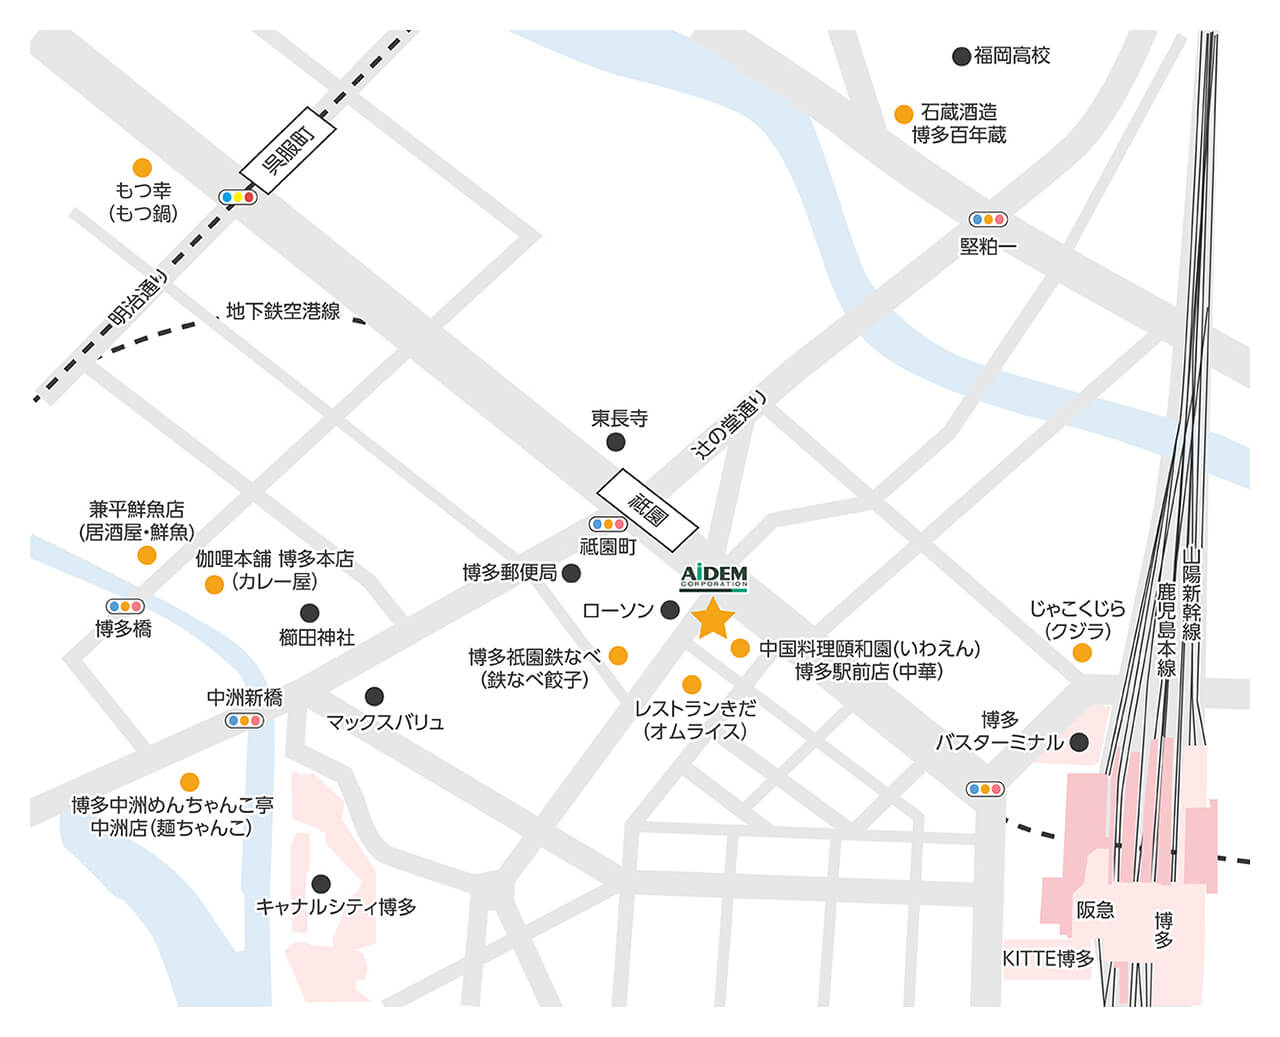 福岡営業所周辺の飲食店マップ